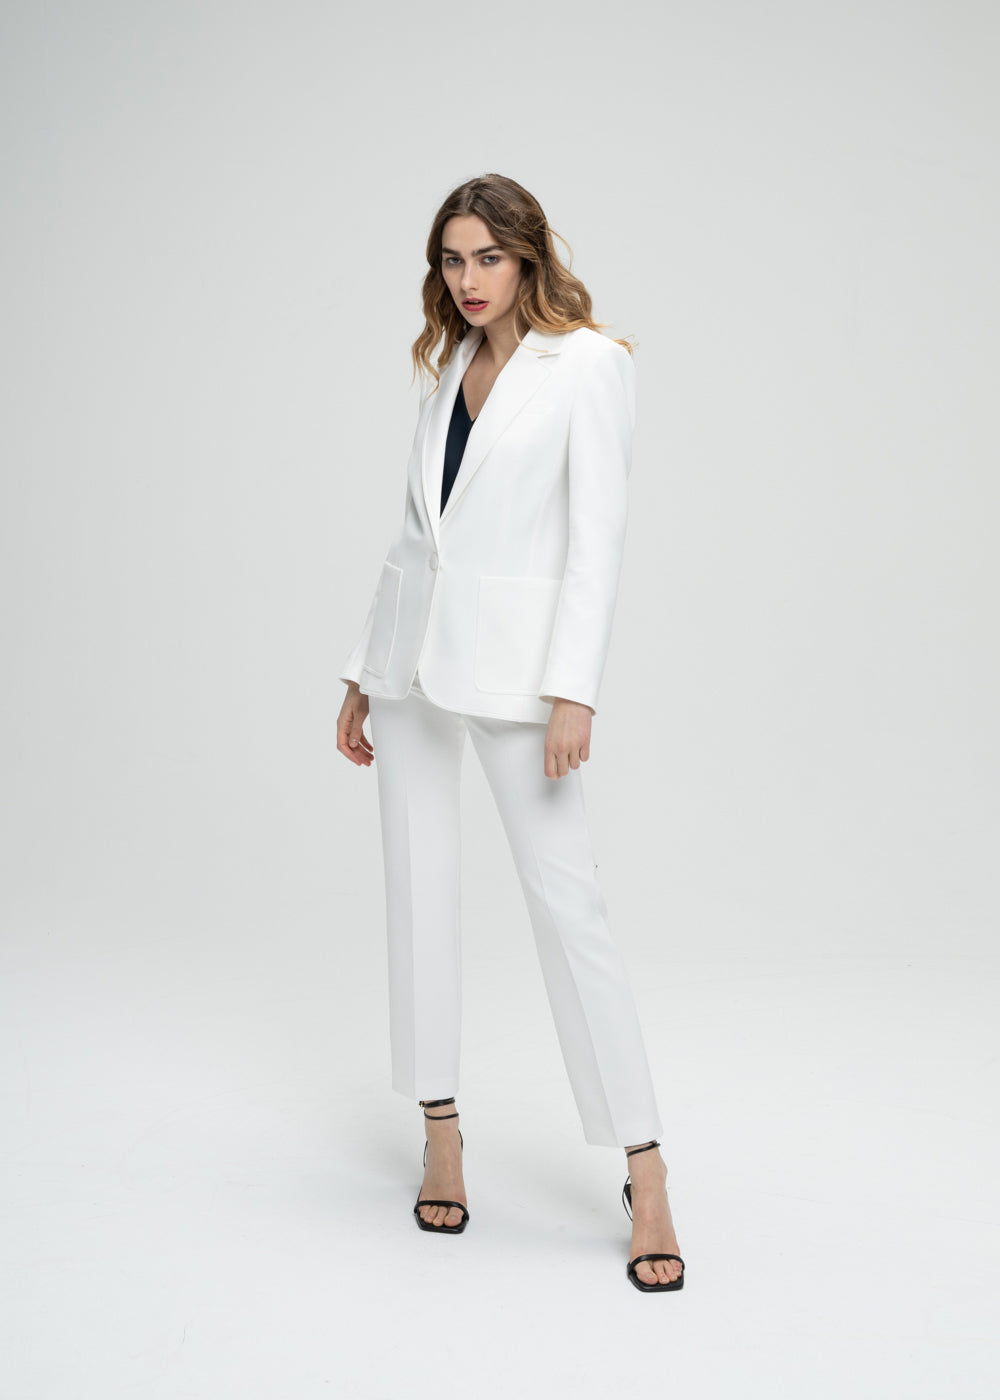 Veste tailleur cintrée blanc avec poches plaquées, col tailleur et détail monogramme manche